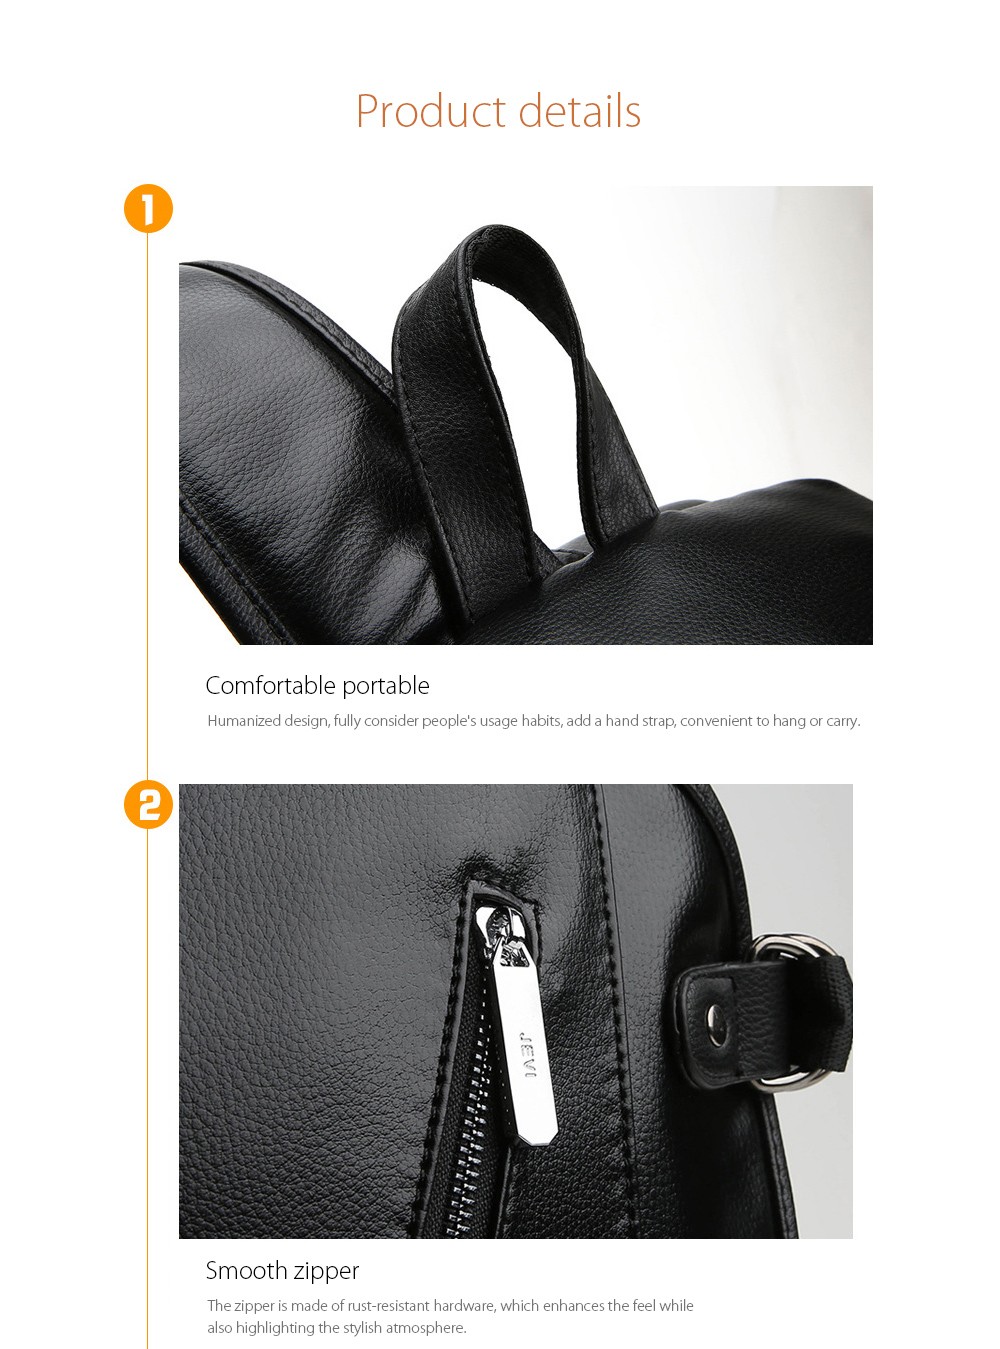 Men's Korean Fashion Leather Backpack details